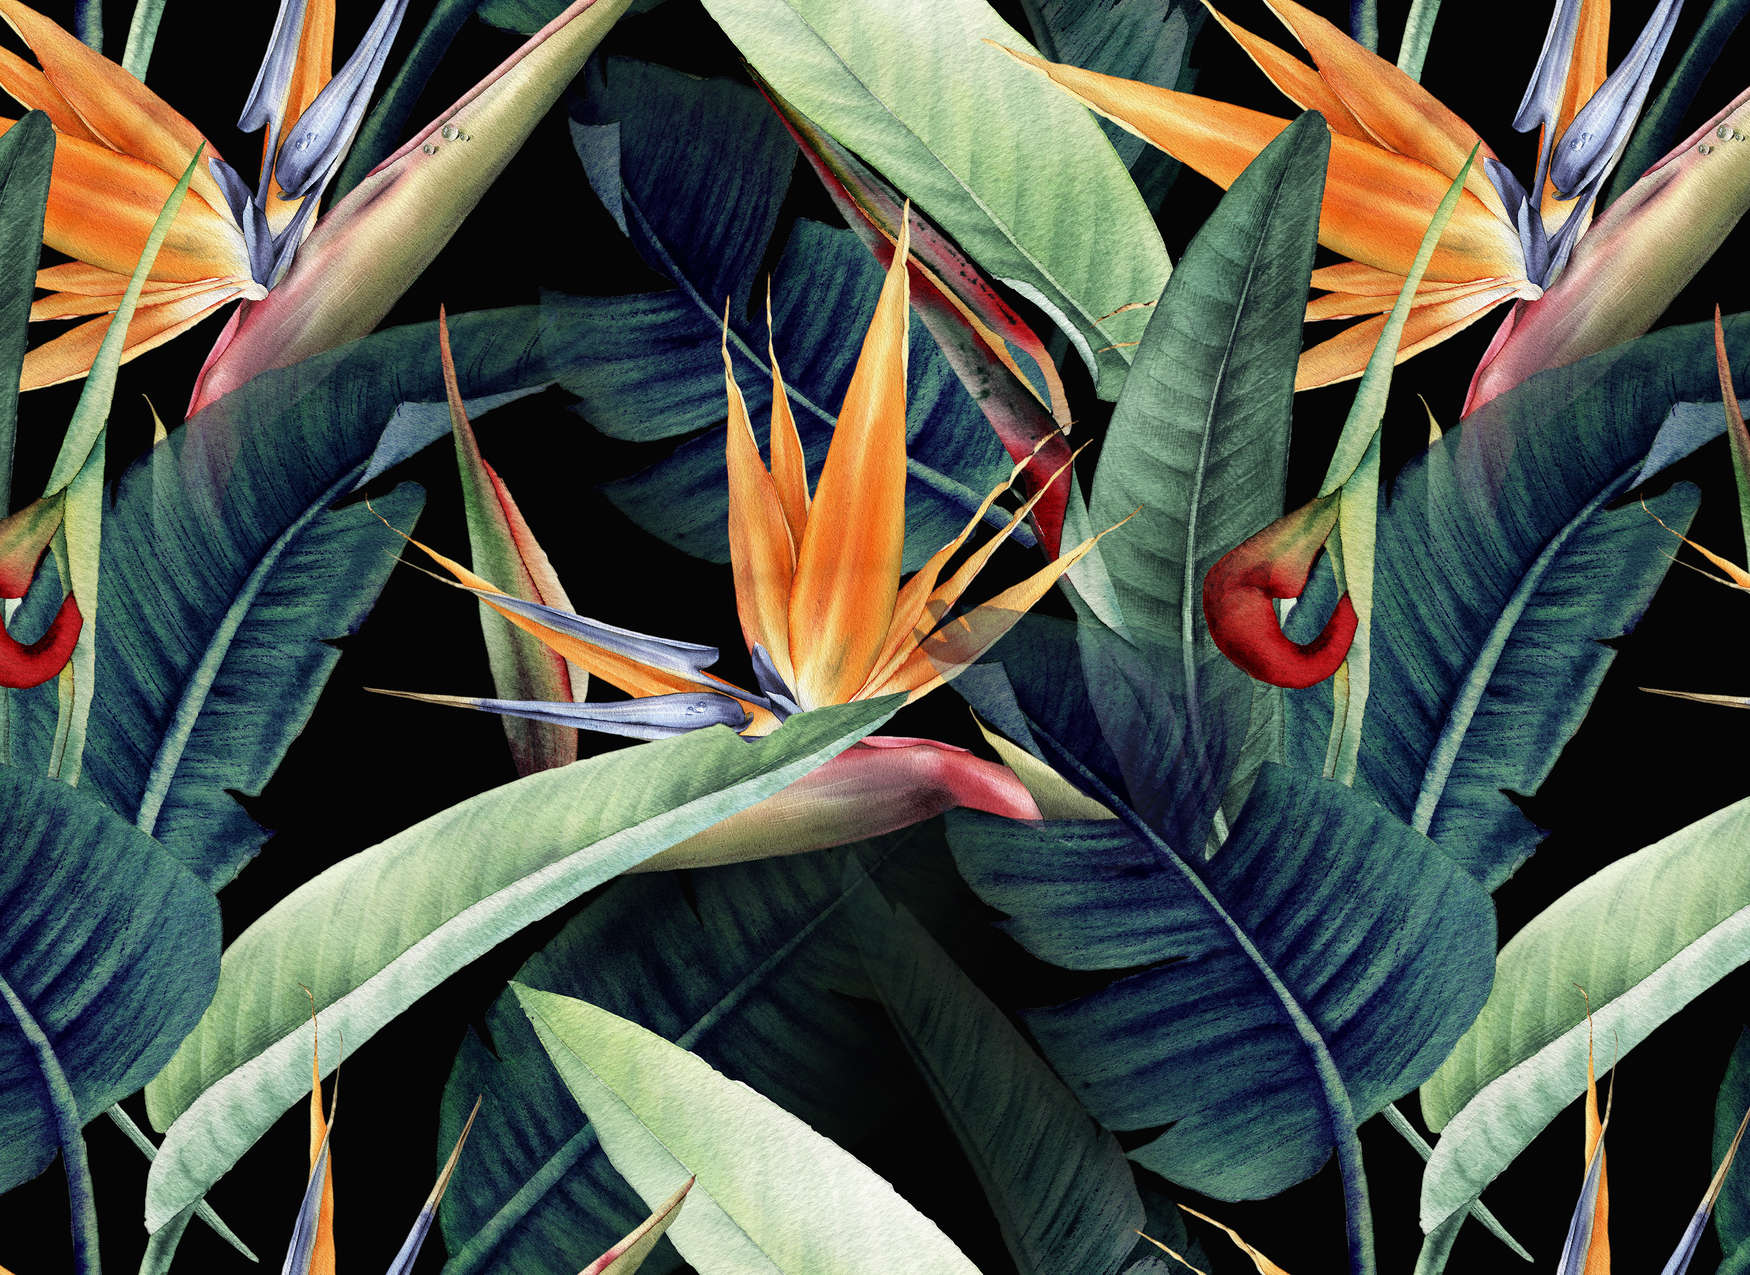             Fototapete Dschungelmotiv mit Blättern gemalt – Grün, Orange, Bunt
        